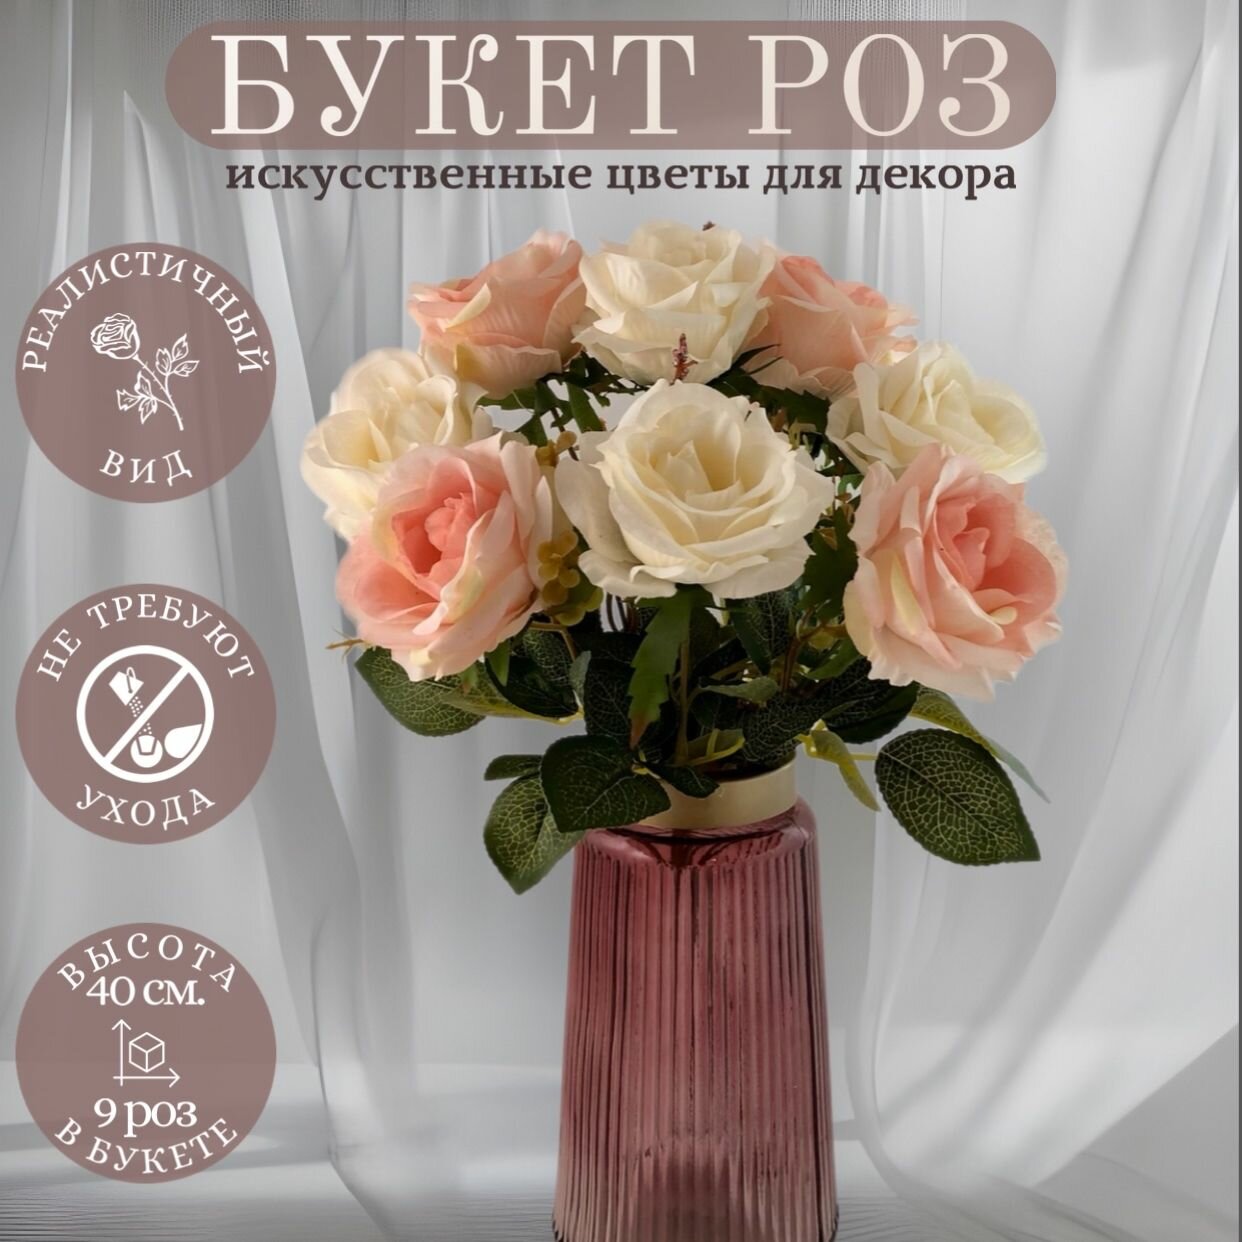 Искусственные цветы для декора "Розы" (букет 9 шт.)